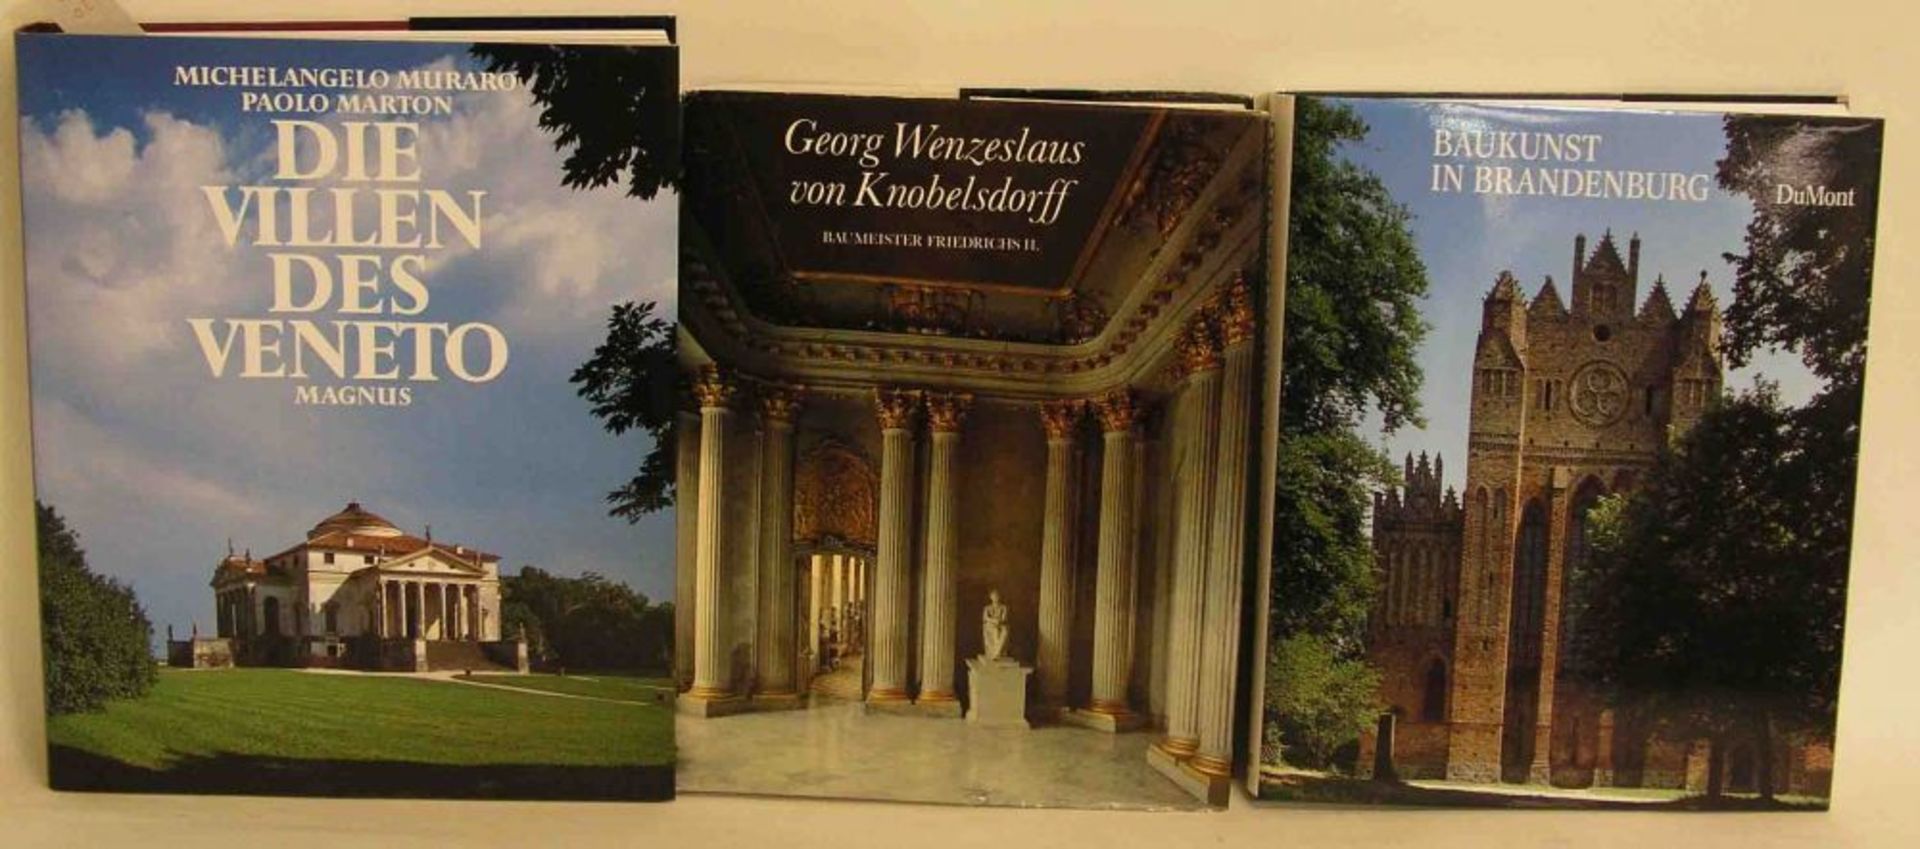 Kunst- und Architekturgeschichte, drei Bücher. Dabei Muraro, Michelangelo: "Die Villen des